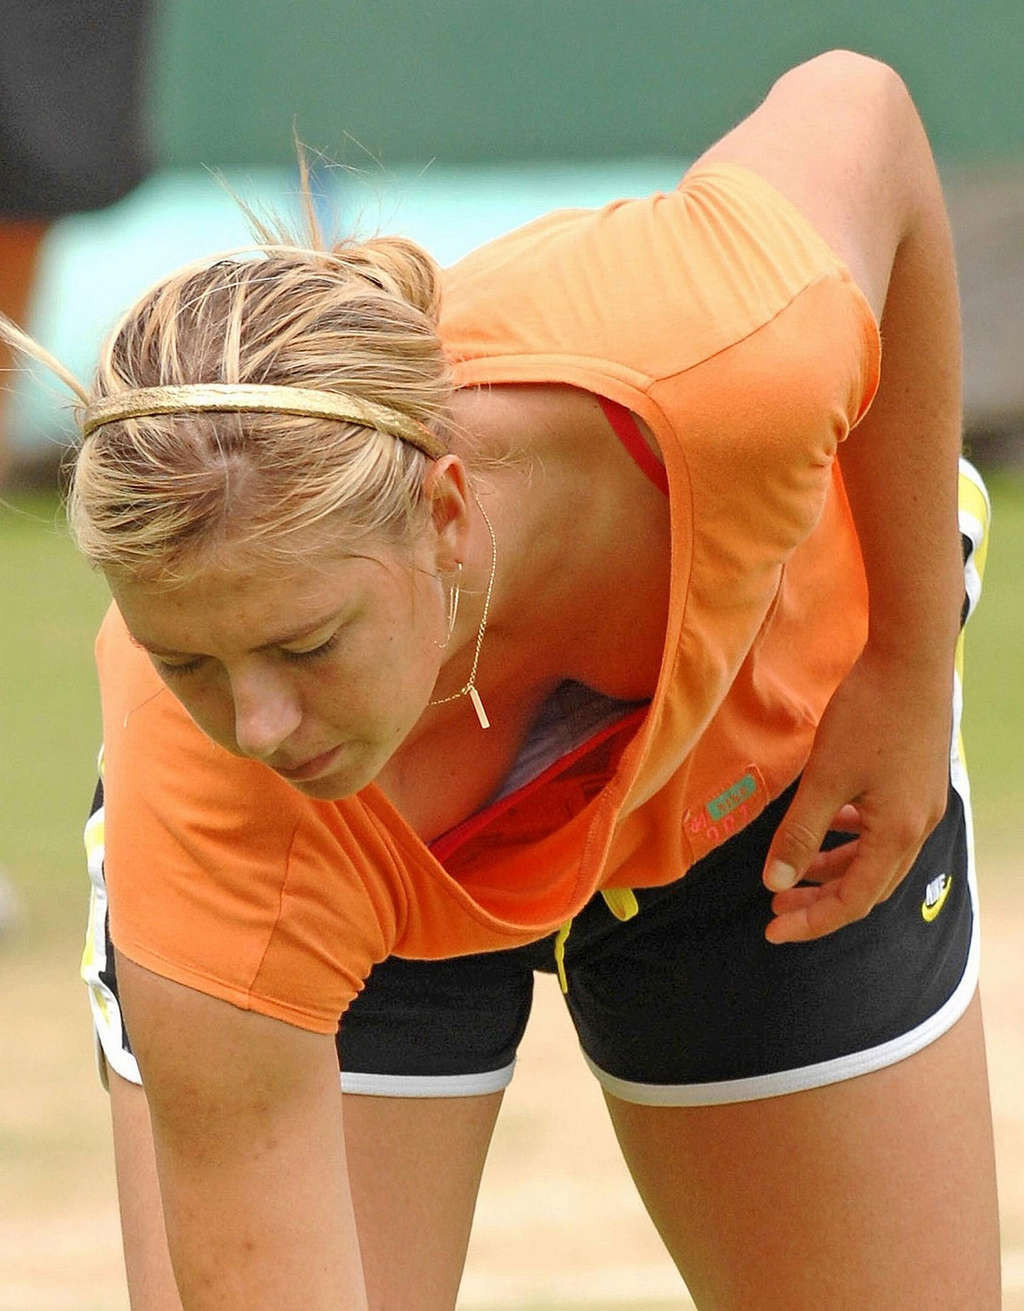 Maria Sharapova nipple slip while play tennis paparazzi shoots #75346454